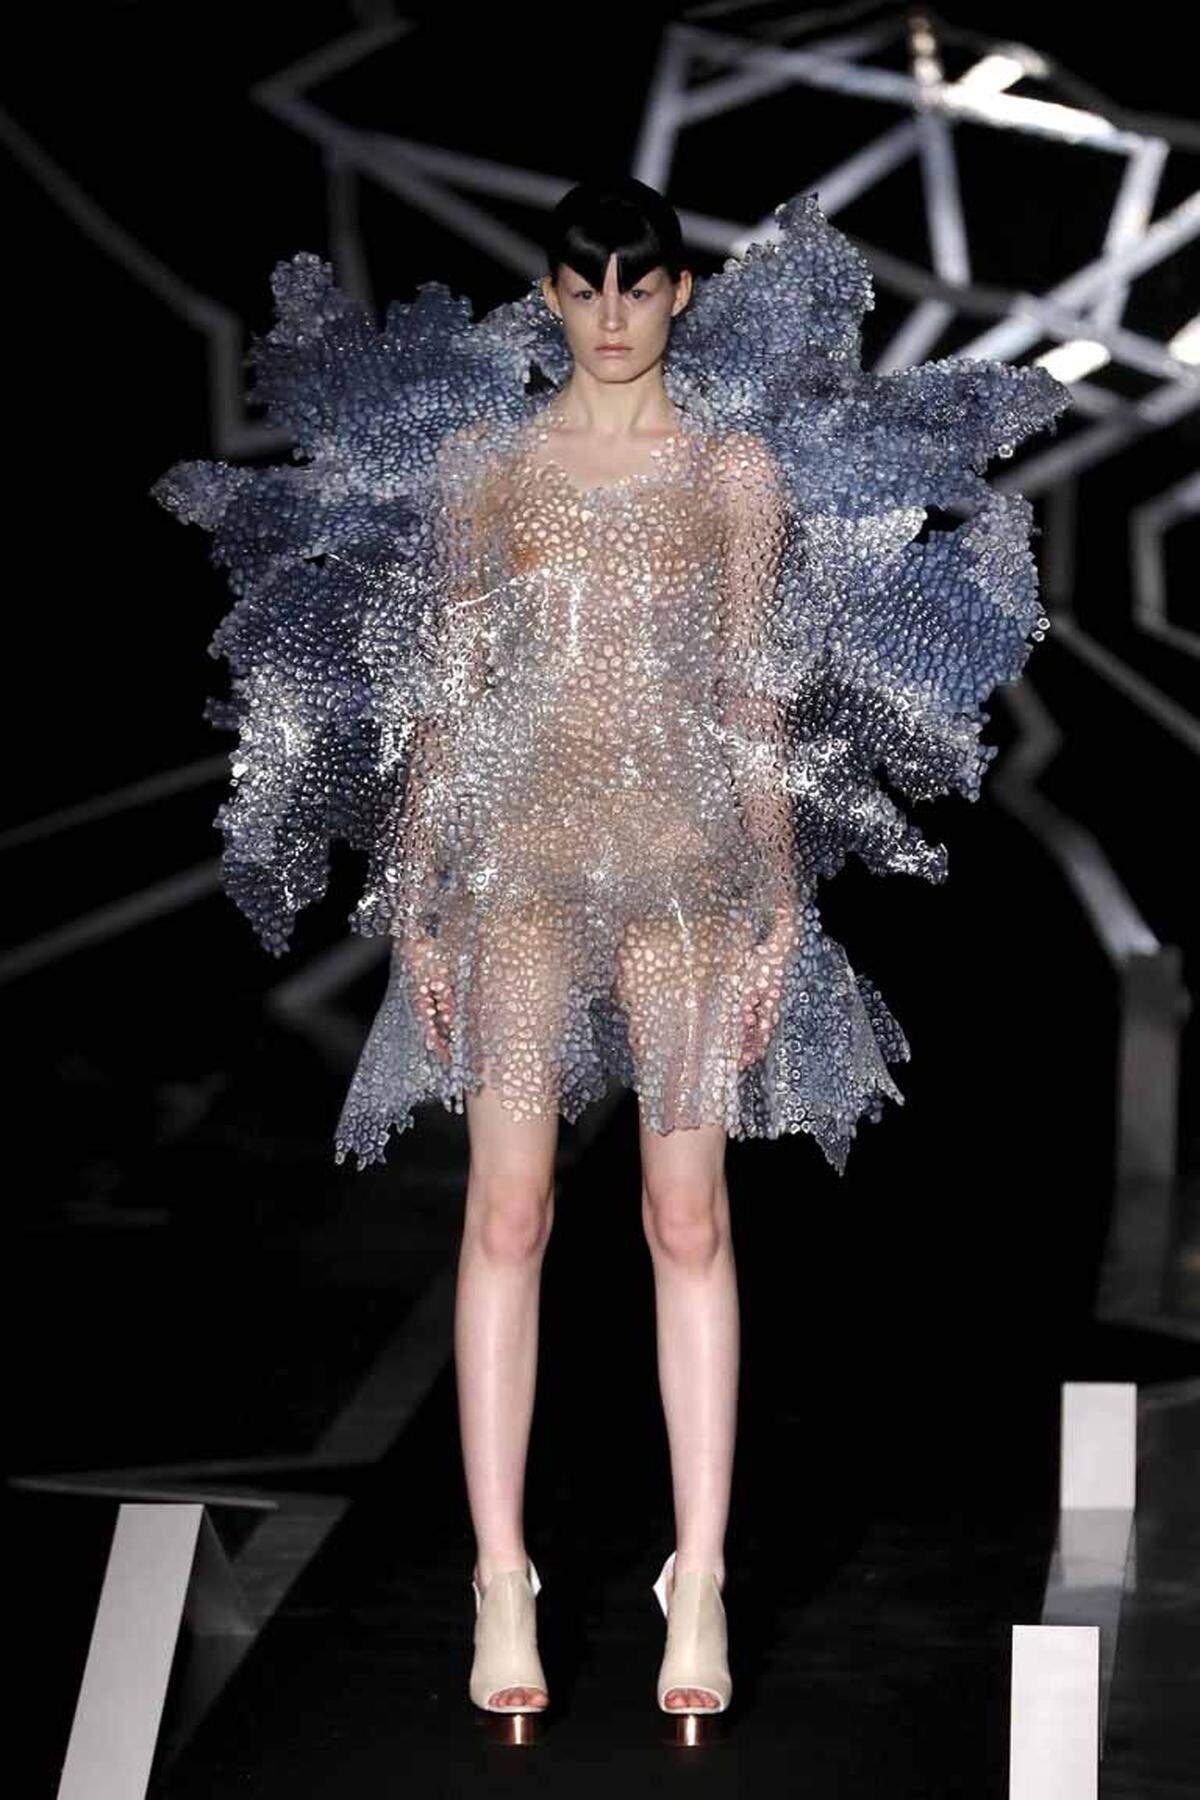 Bei der niederländischen Modedesignerin ging es weitaus futuristischer zu.